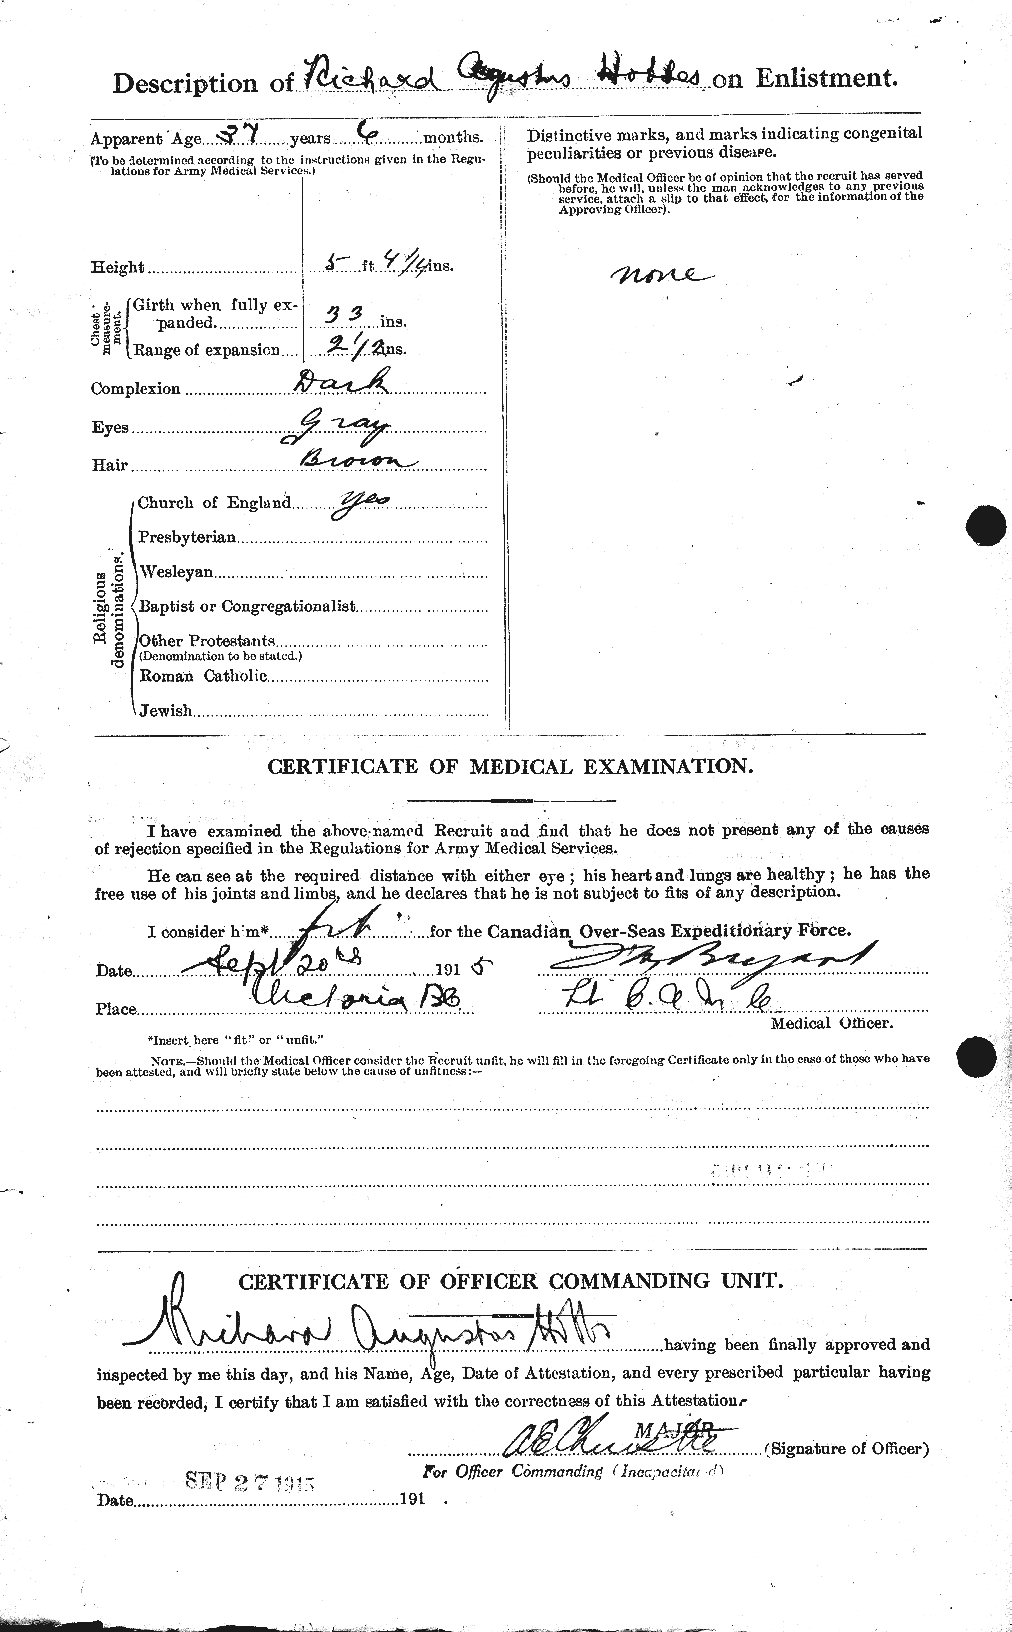 Dossiers du Personnel de la Première Guerre mondiale - CEC 394996b